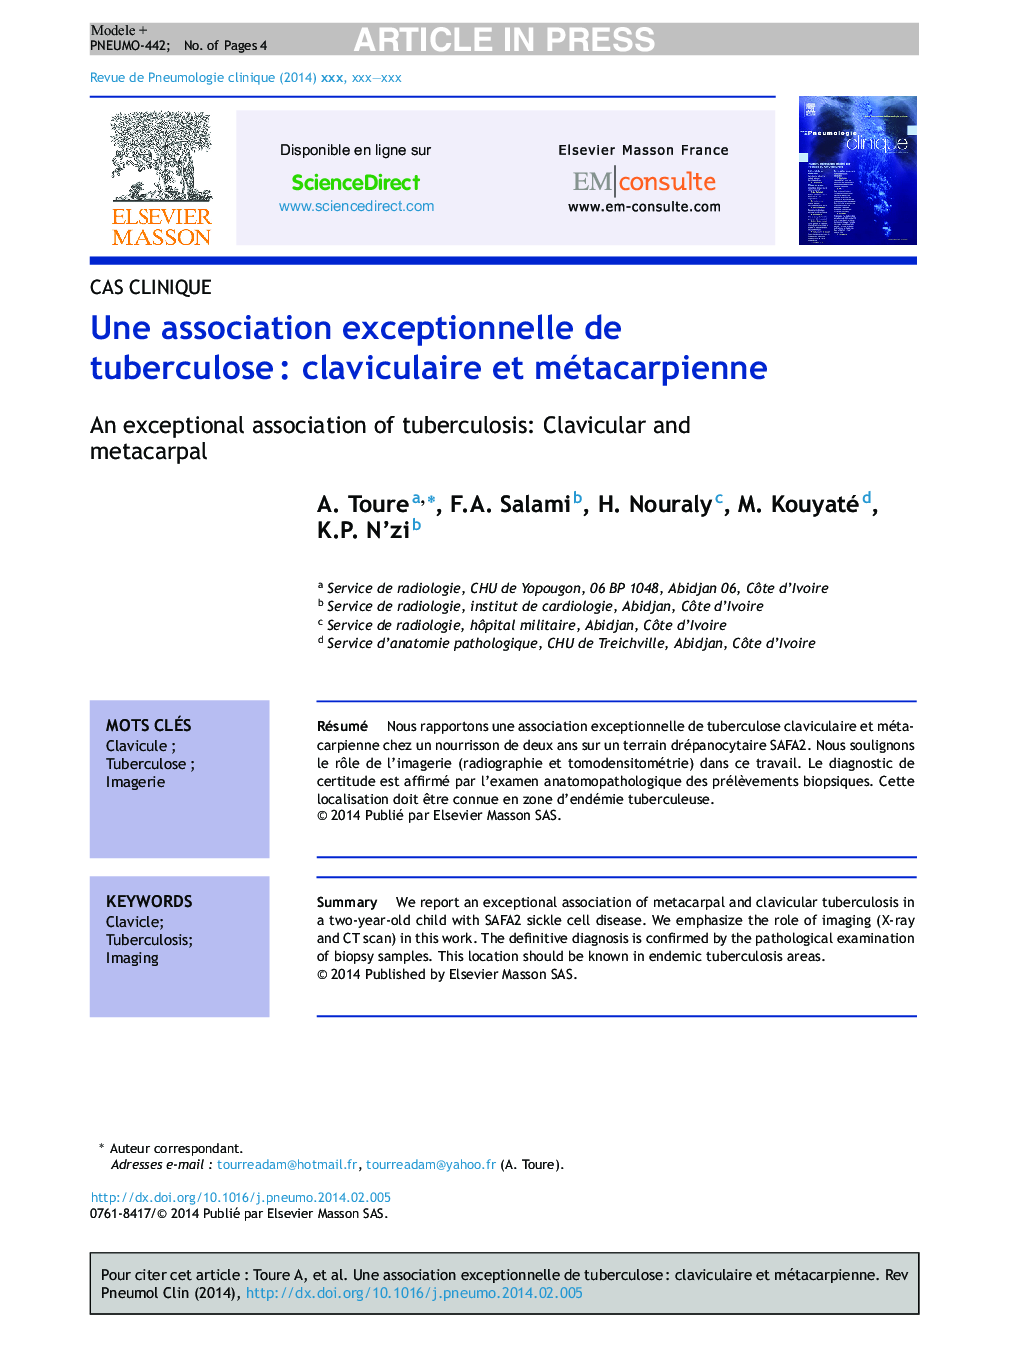 Une association exceptionnelle de tuberculoseÂ : claviculaire et métacarpienne